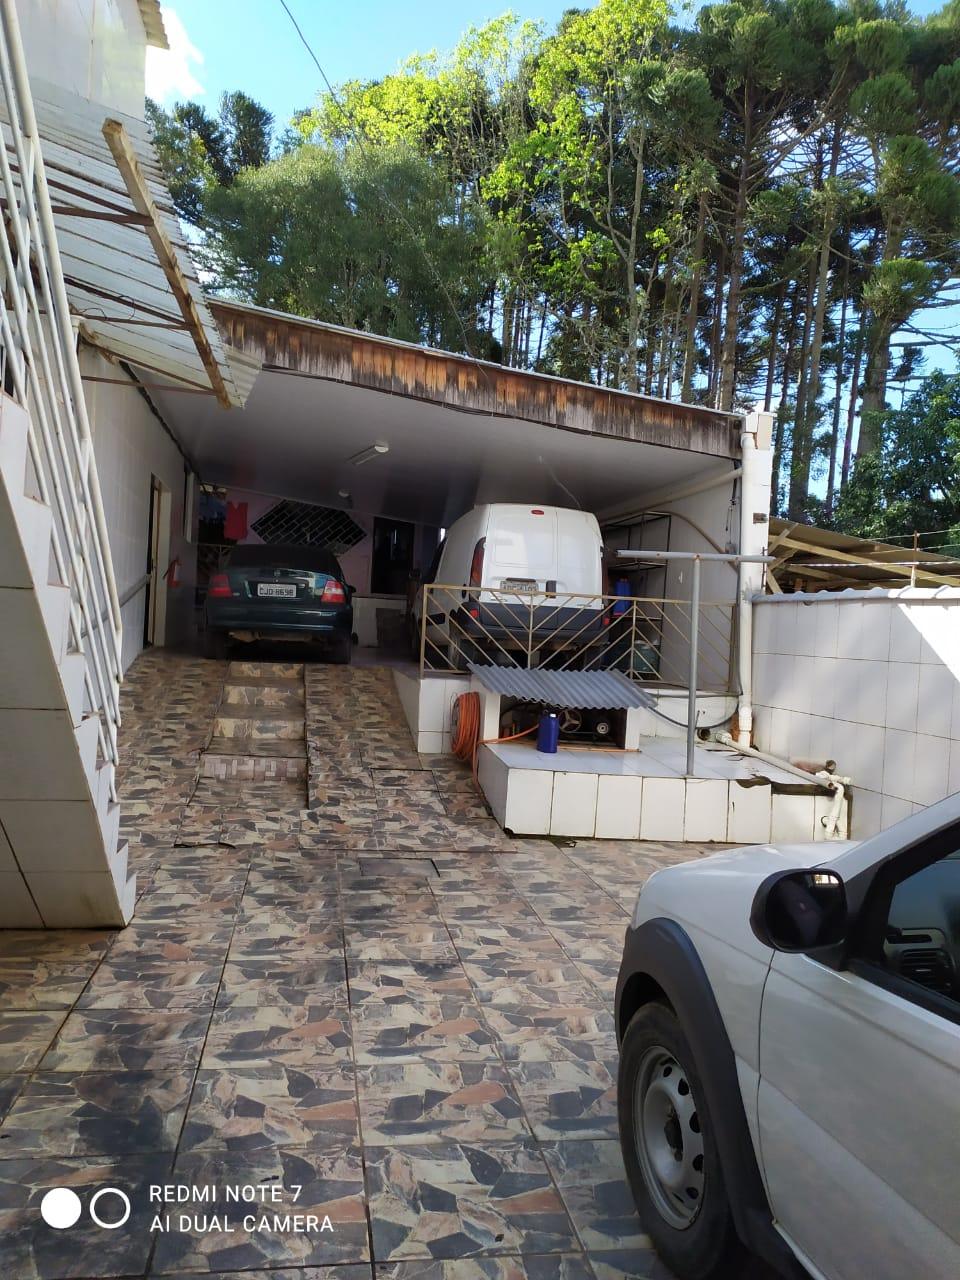 Residência para alugar no centro, próximo da Prefeitura de Quitandinha.